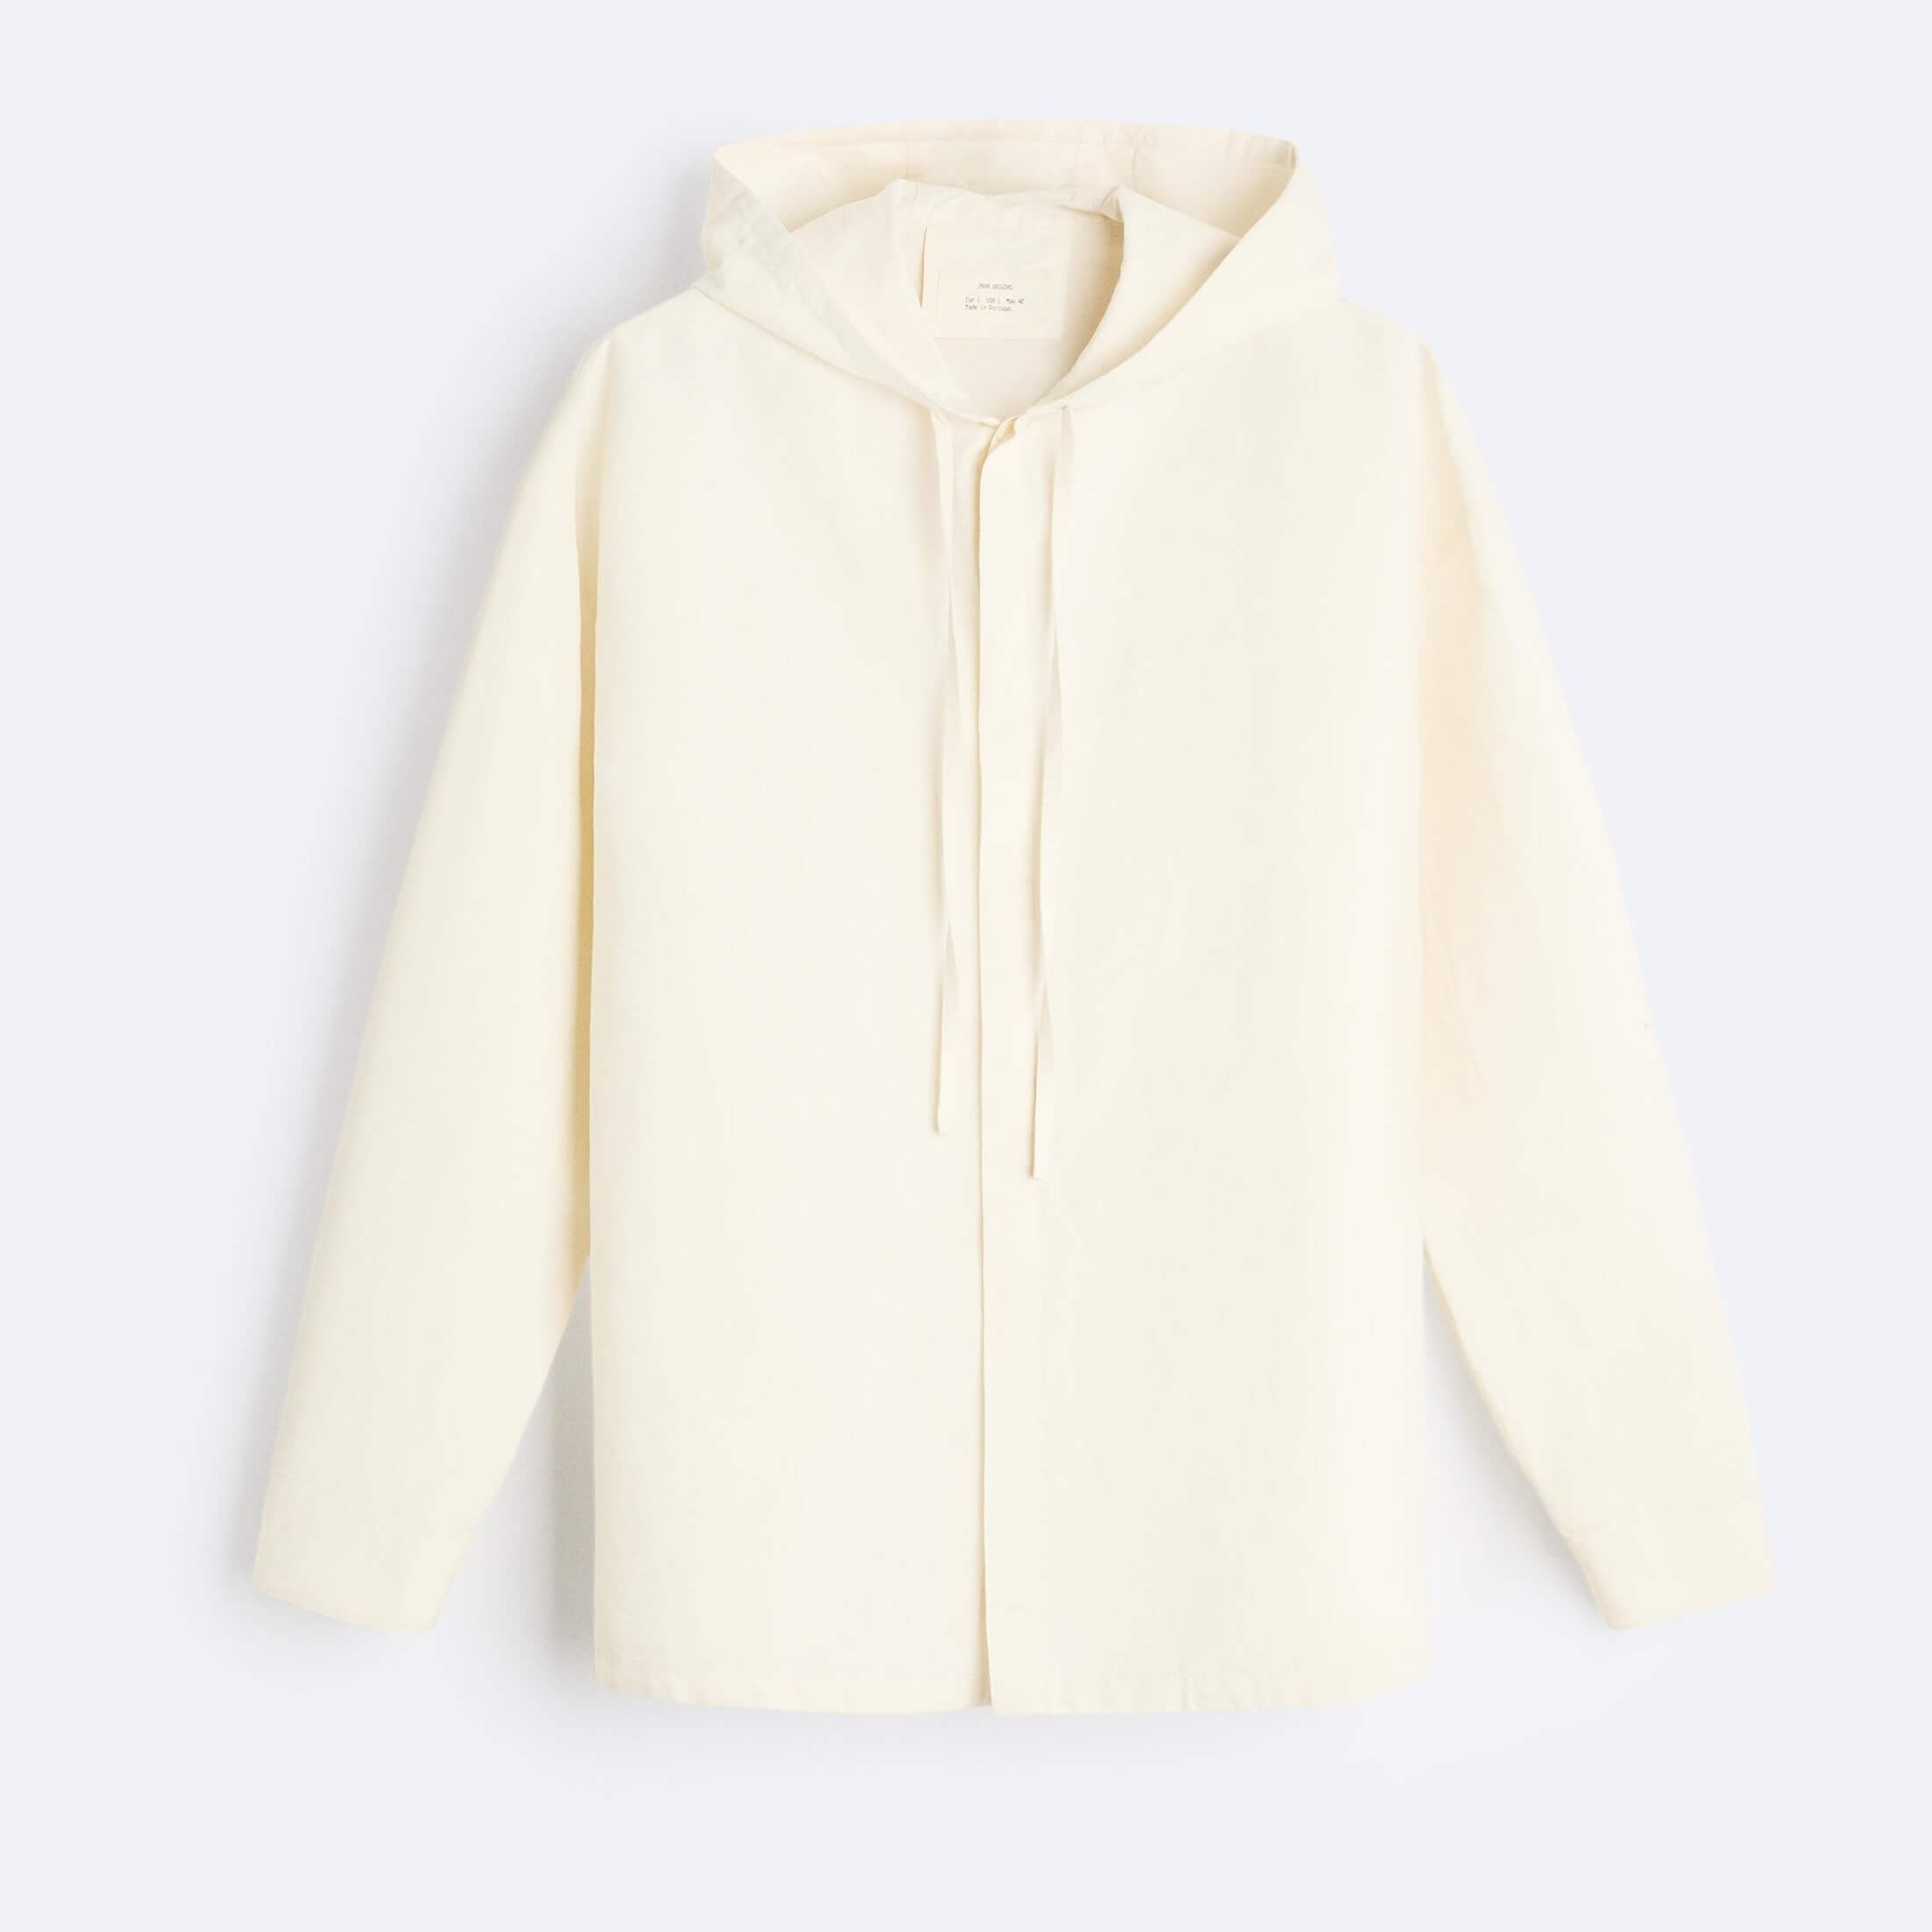 Рубашка верхняя Zara Relaxed-fit Hooded, светло-бежевый рубашка женская из хлопка и льна блузка свободного покроя в ретро стиле с рукавами фонариками средней длины лето